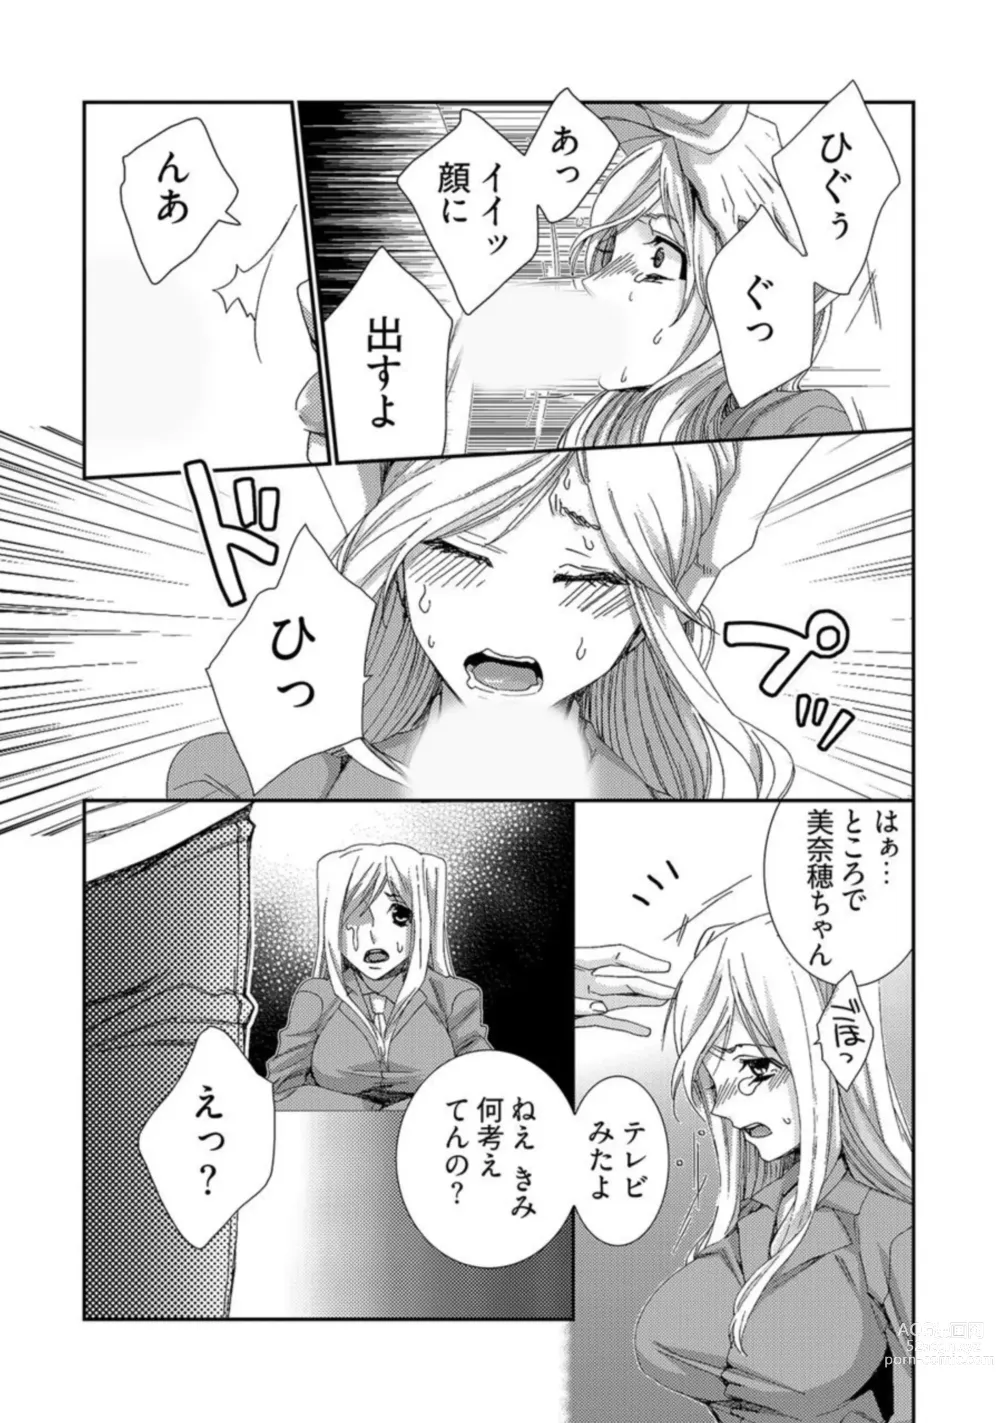 Page 9 of manga Jikan o Ayatsuri Mukyoka Tanetsuke - Shojo kara Ninshin made Mugen Loop Vol. 2